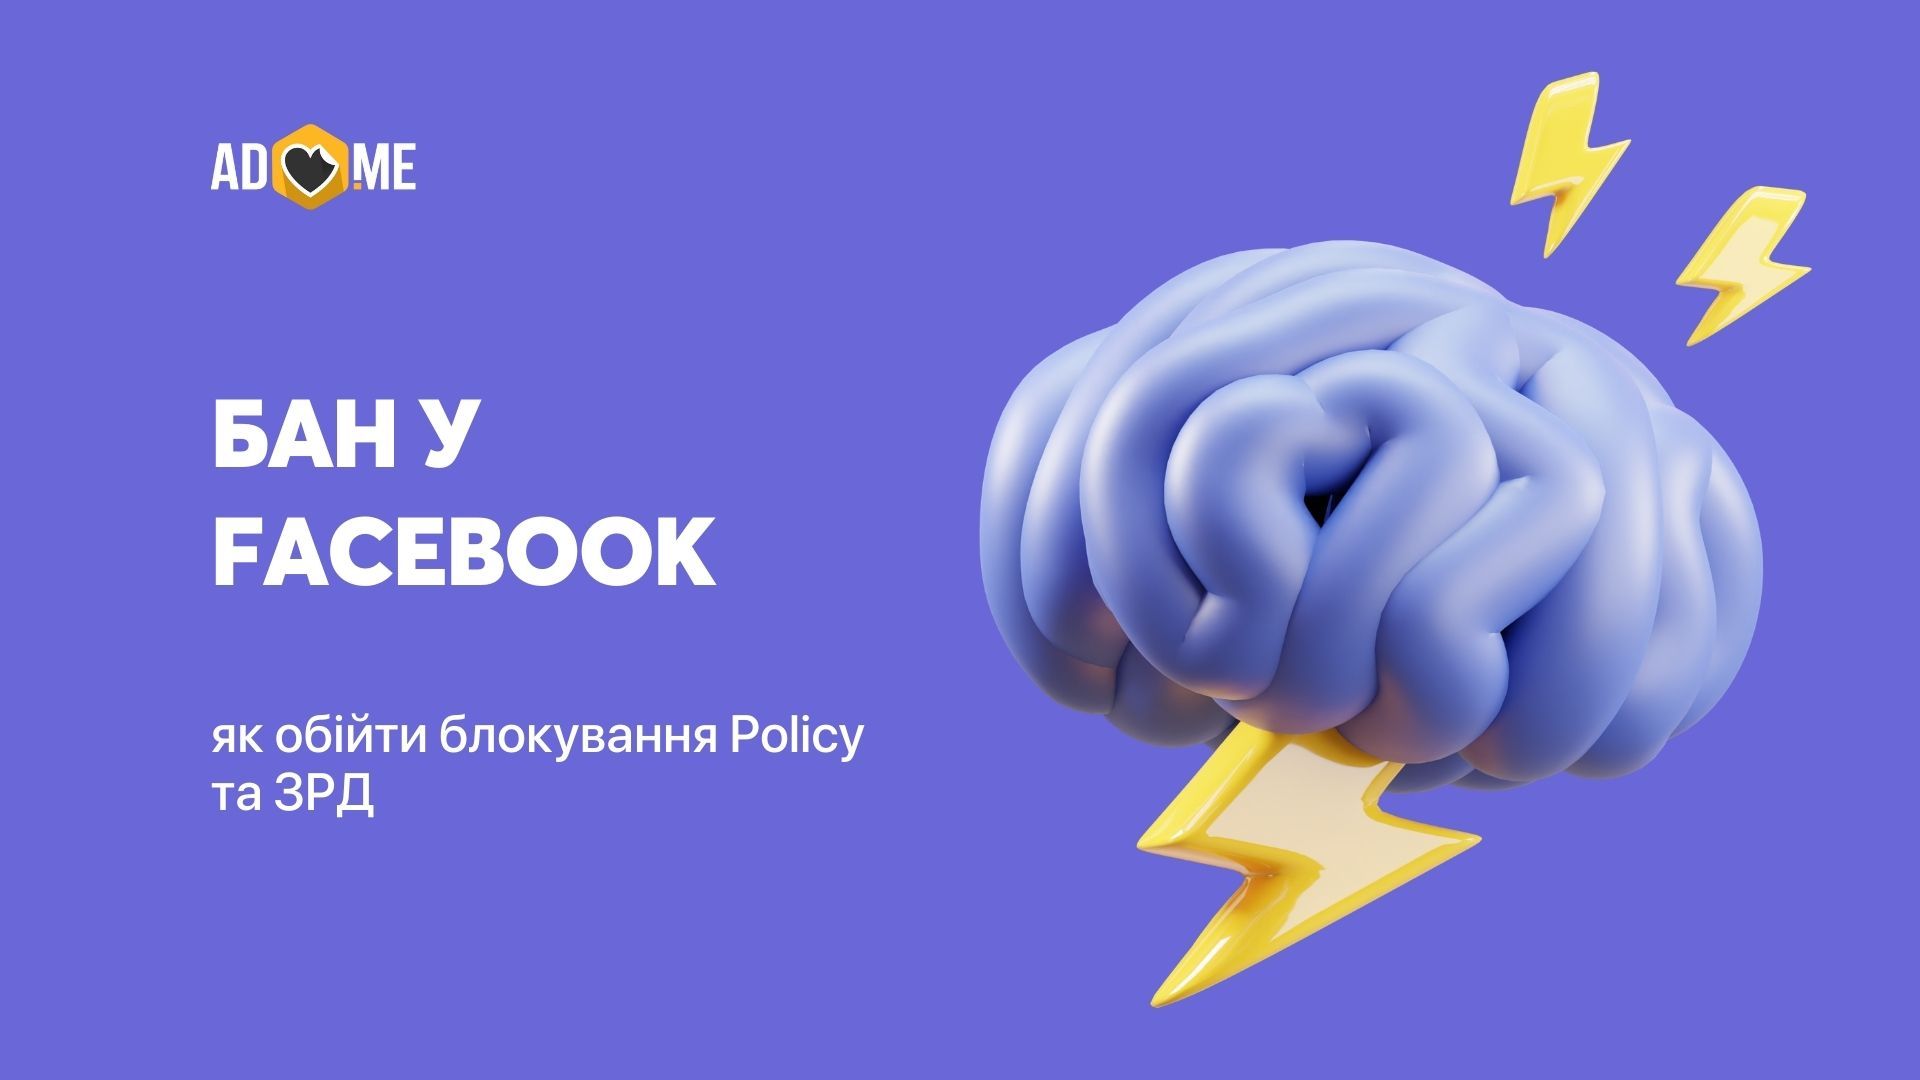 Бан у Facebook: як обійти блокування Policy та ЗРД